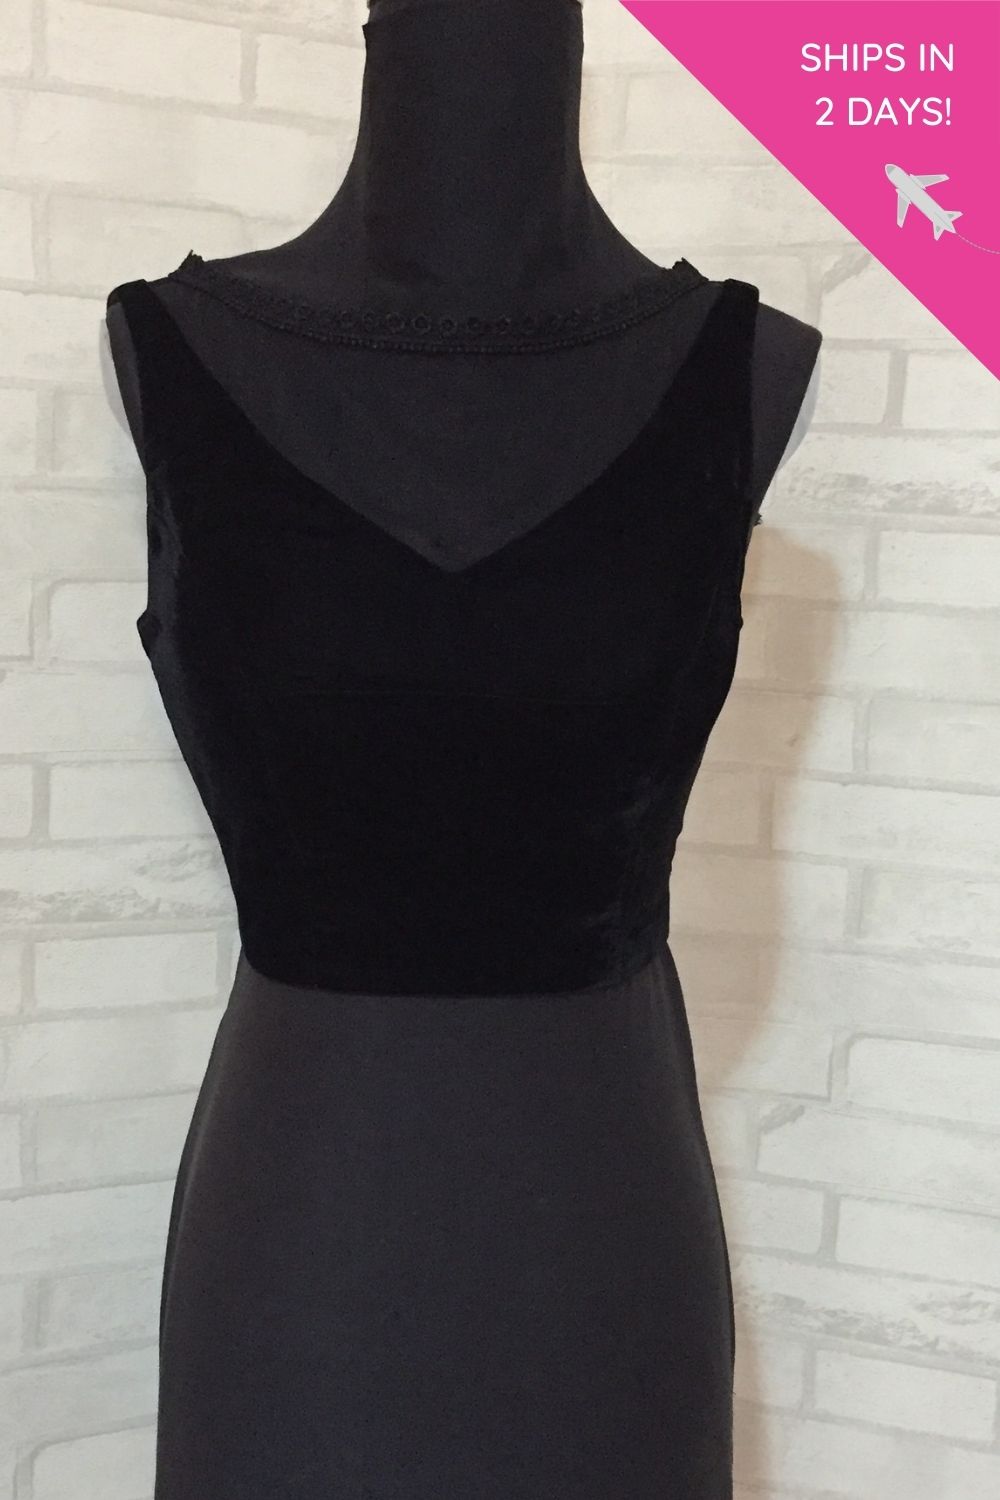 Black velvet sheer sleeveless blouse : size- 38